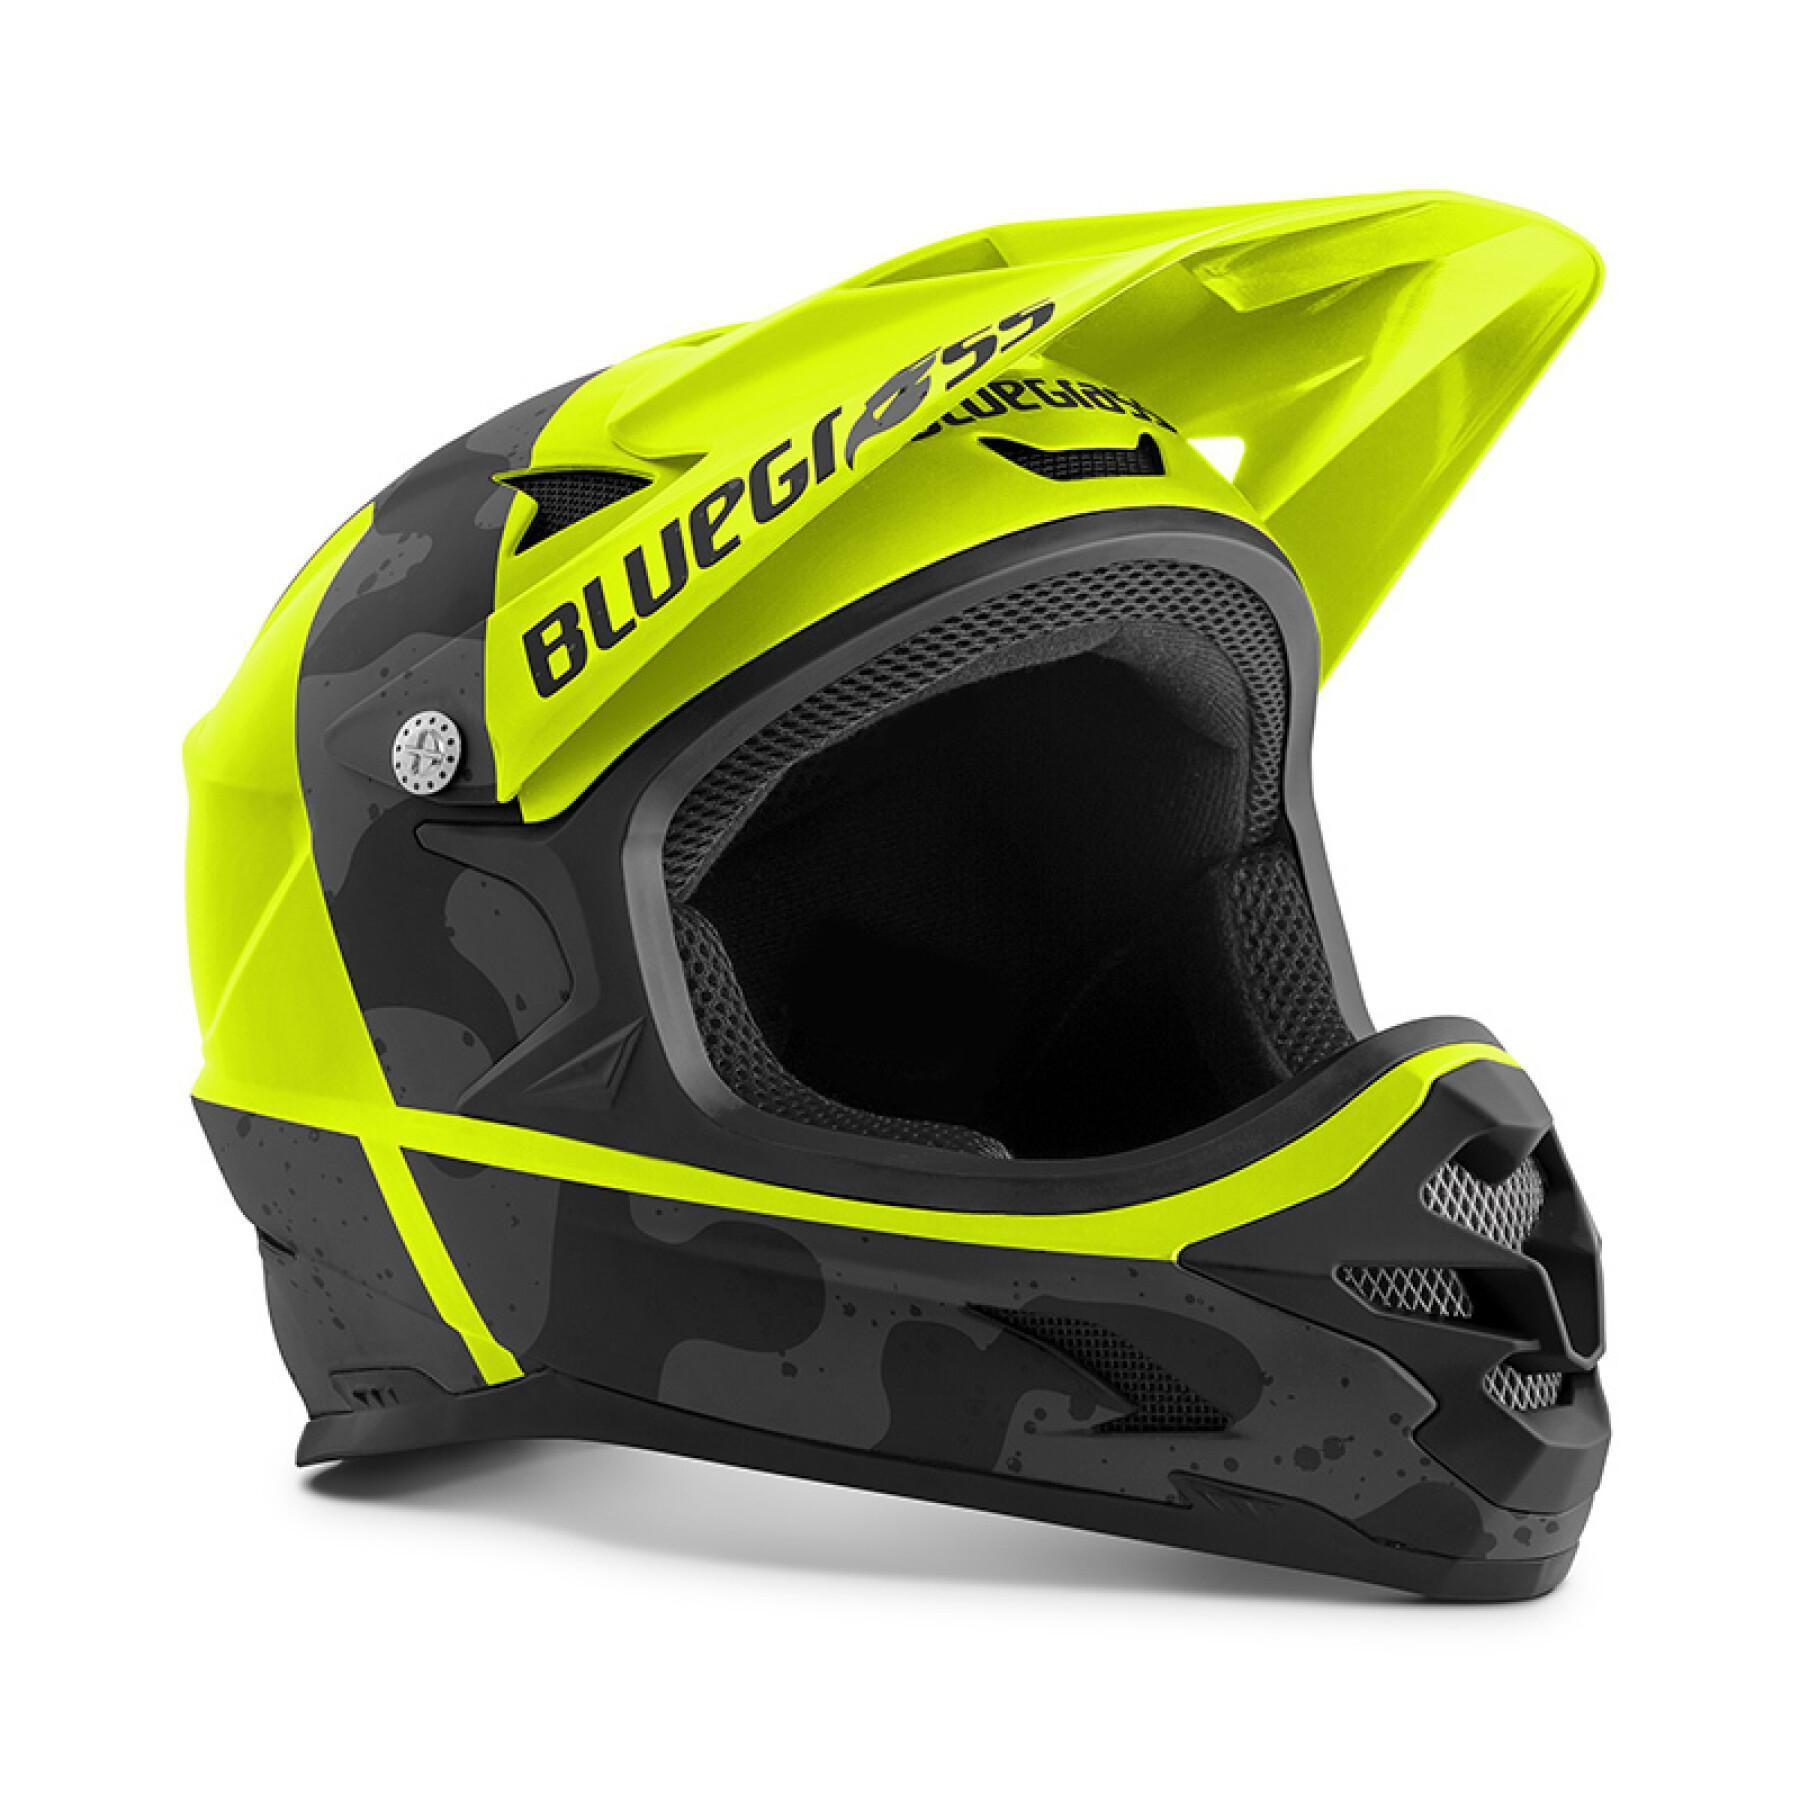 Mountain bike helmet Bluegrass Intox